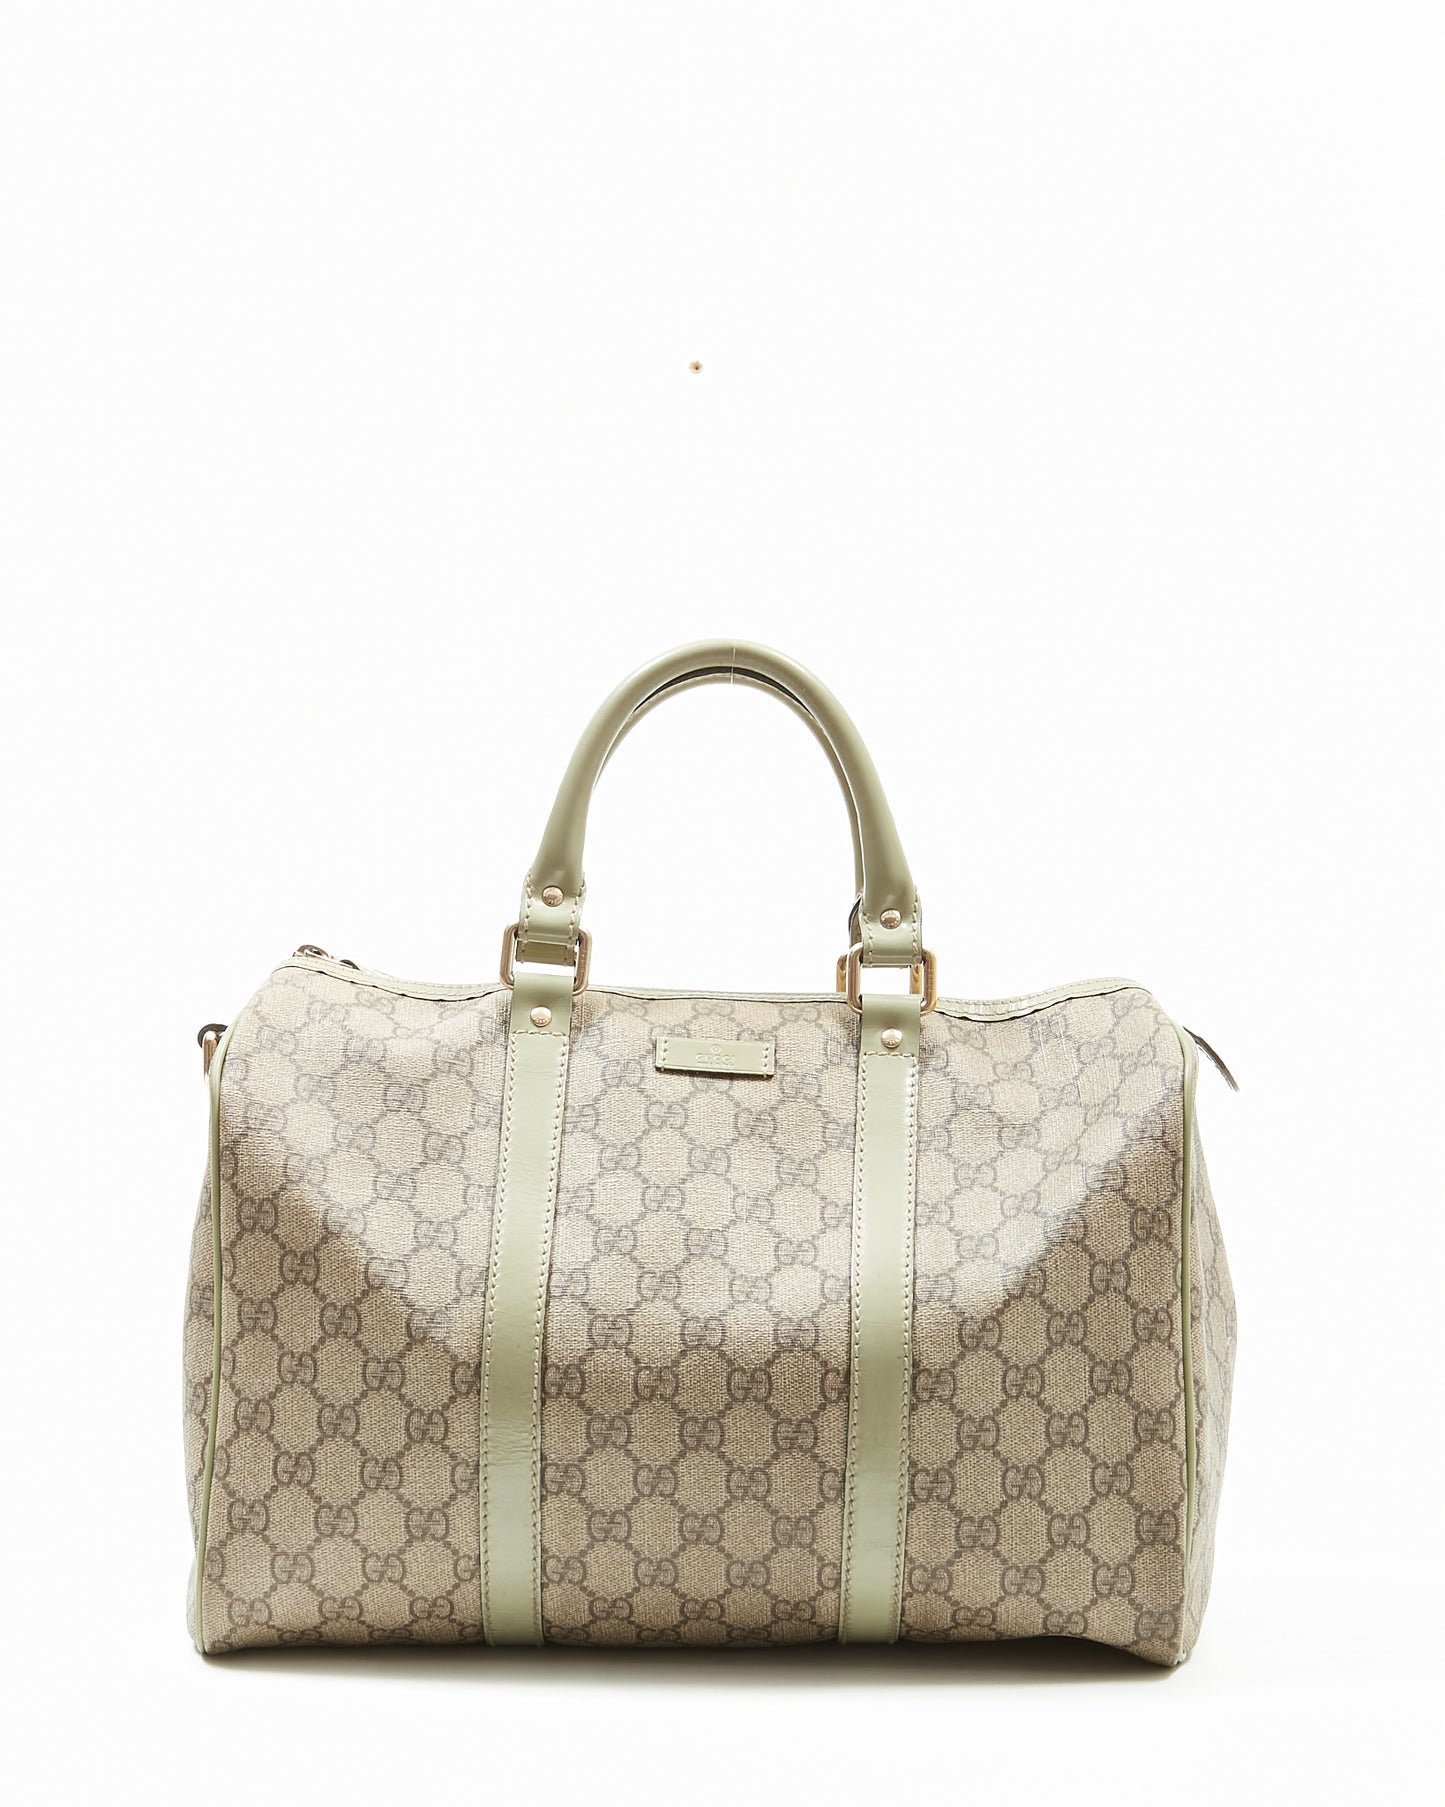 Gucci GG Supreme Canvas Boston Bag